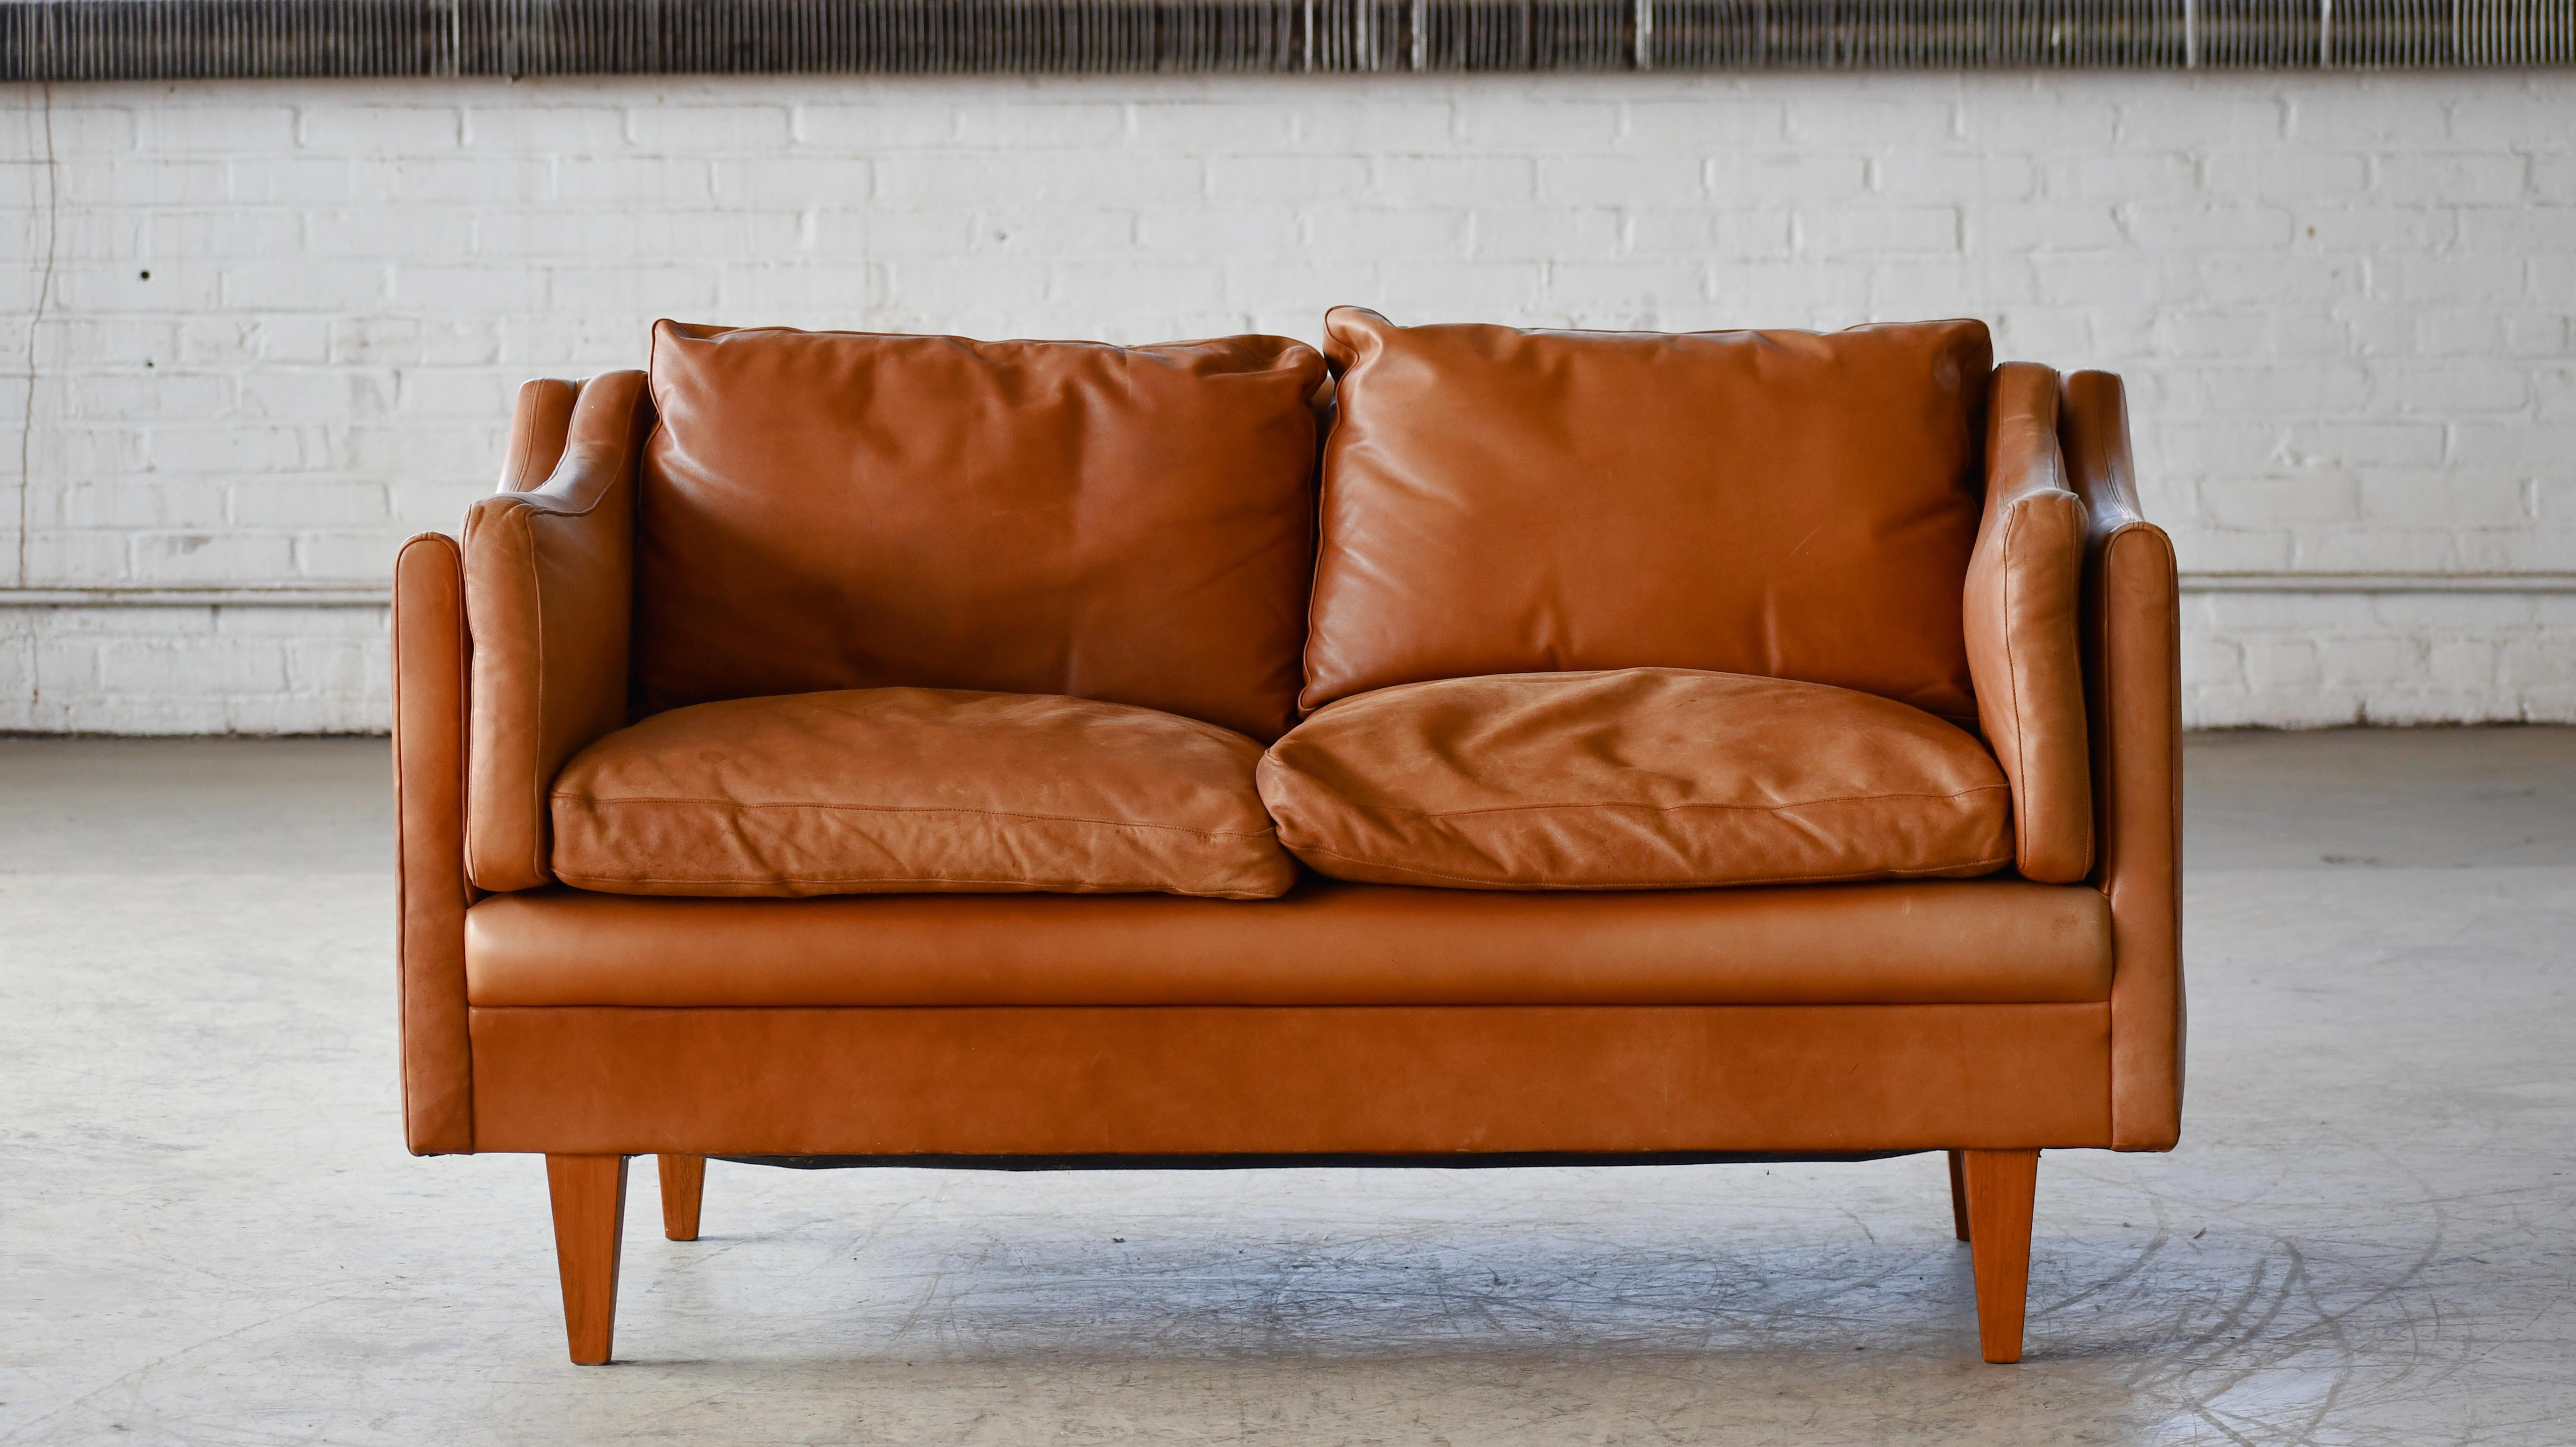 Klassisches dänisches Sofa im Stil von Børge Mogensen in cognacfarbenem Leder. Ganz im Stil von Illum Wikkelso und mit den spitz zulaufenden, abgewinkelten Beinen, die dieser berühmten V-Serie sehr ähnlich sind.   Die mit Daunen gefüllten Kissen